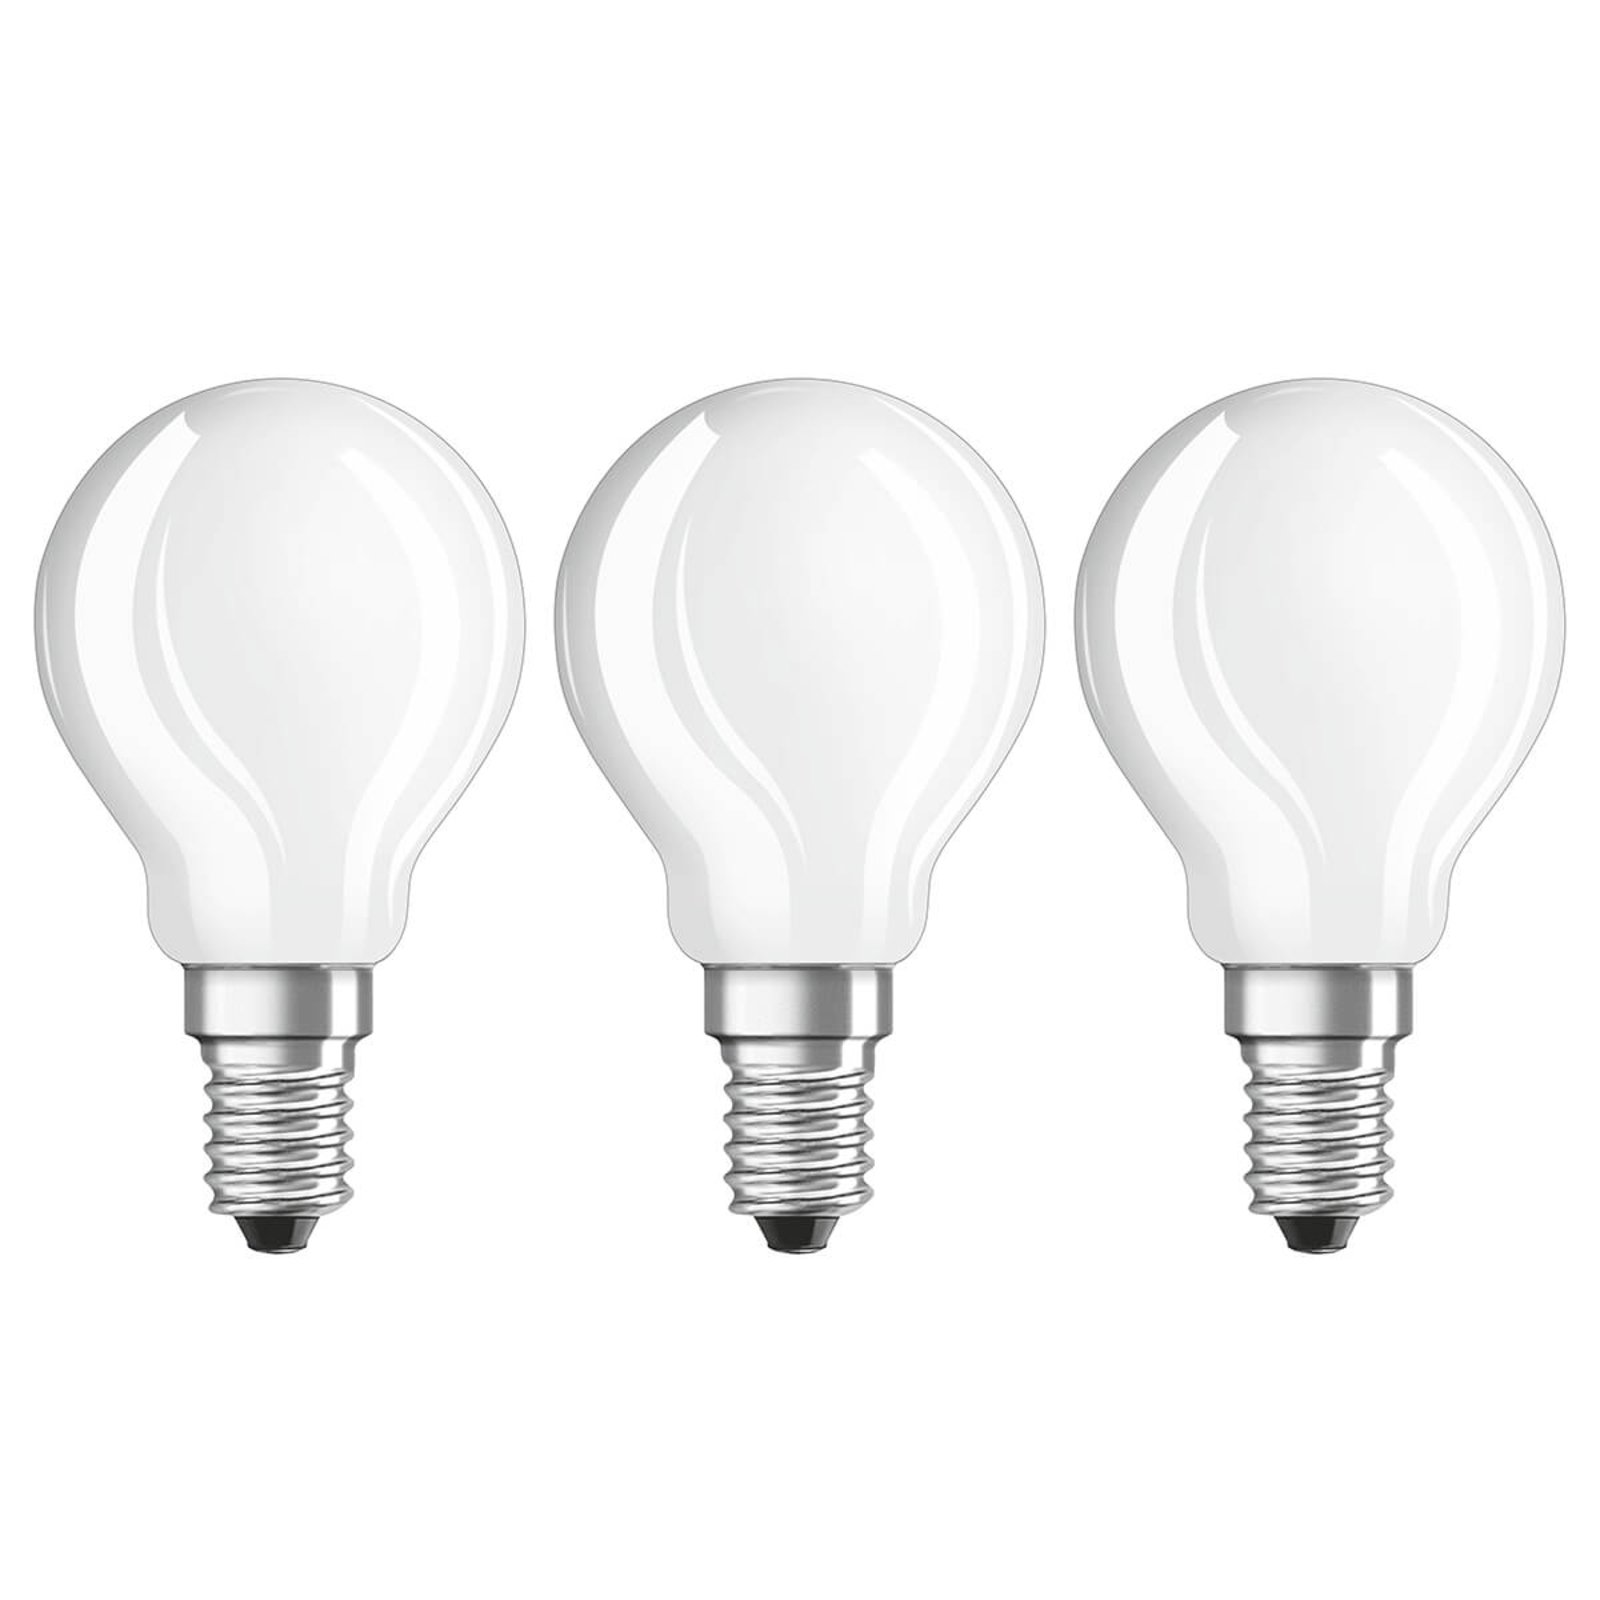 Λαμπτήρας LED E14 4W, ζεστό λευκό, 470 lumen, σετ 3 τεμαχίων